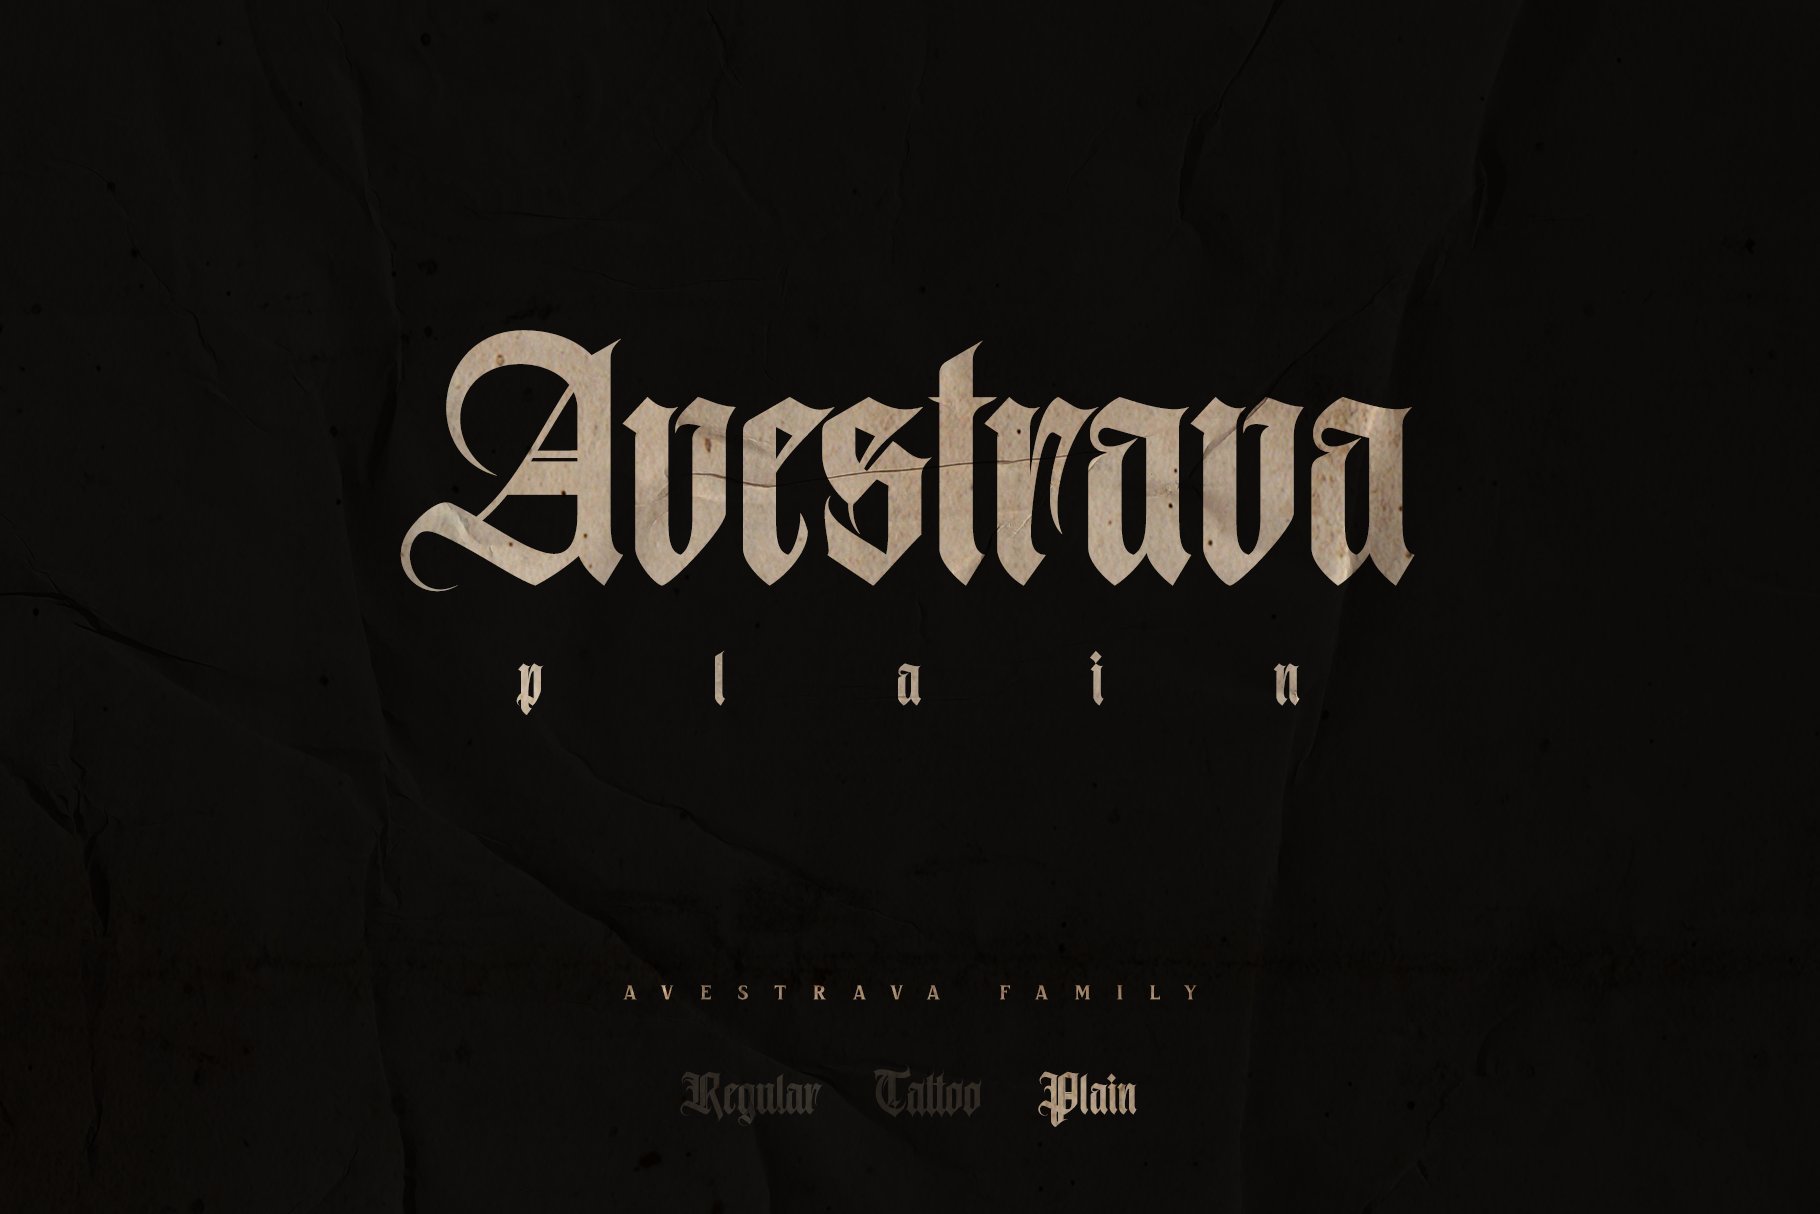 Avestrava Plain cover image.